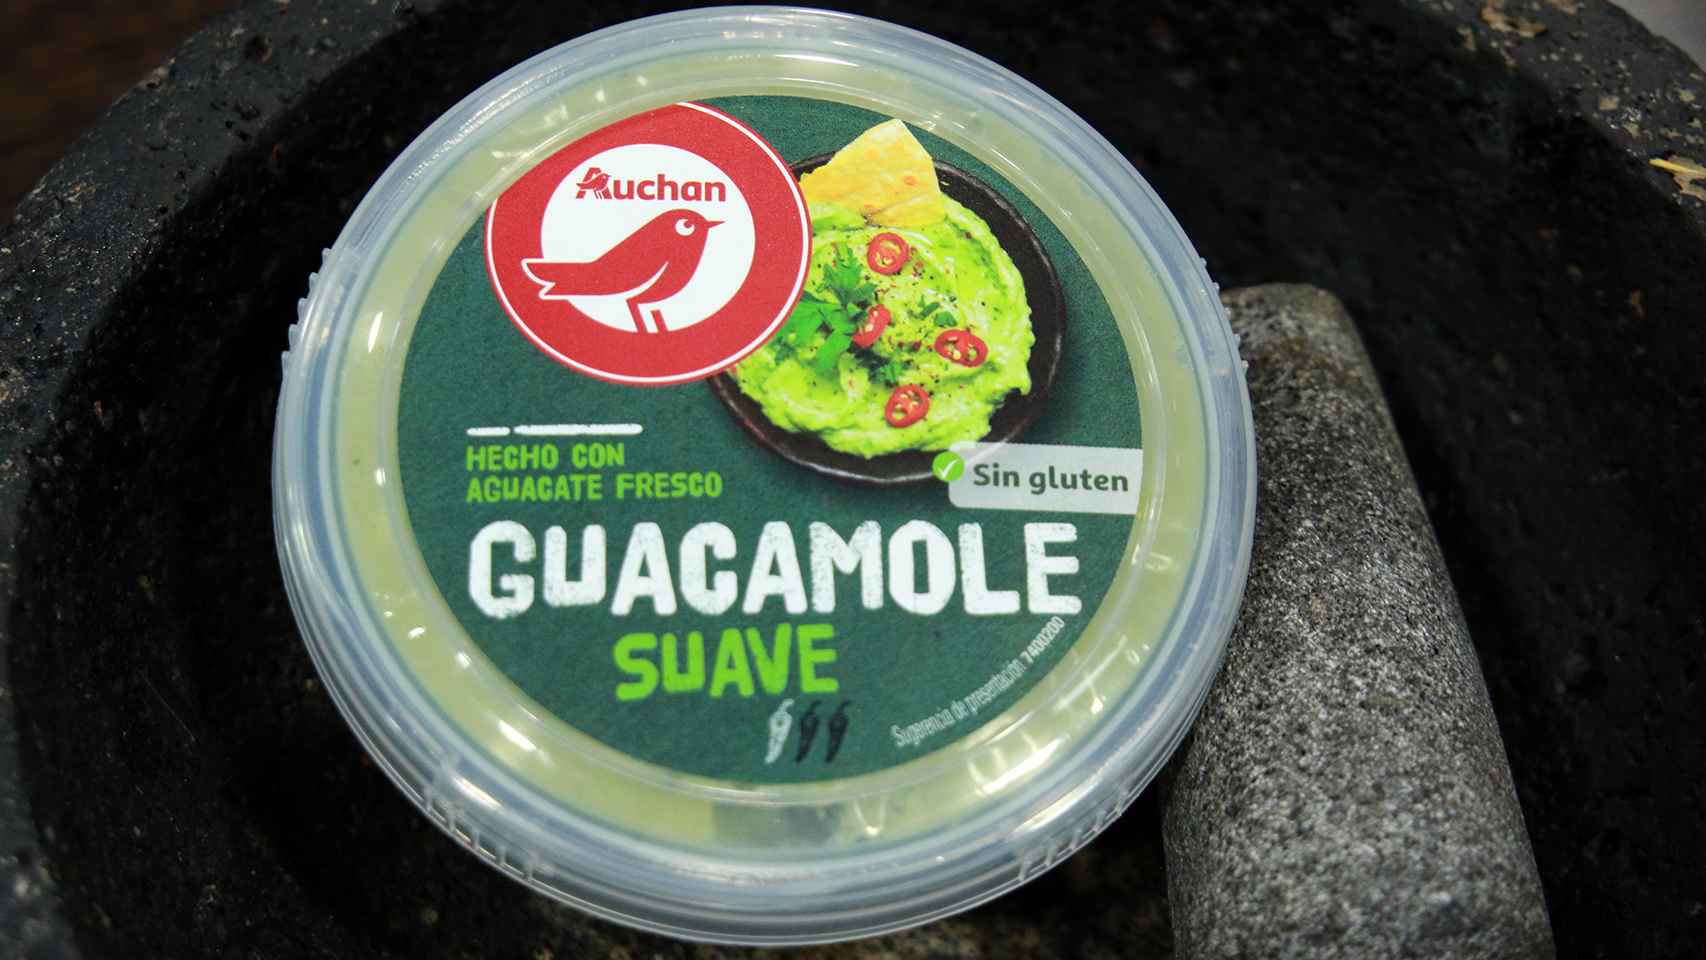 El bote de 200 gramos de guacamole de Auchan, la marca blanca de Alcampo.